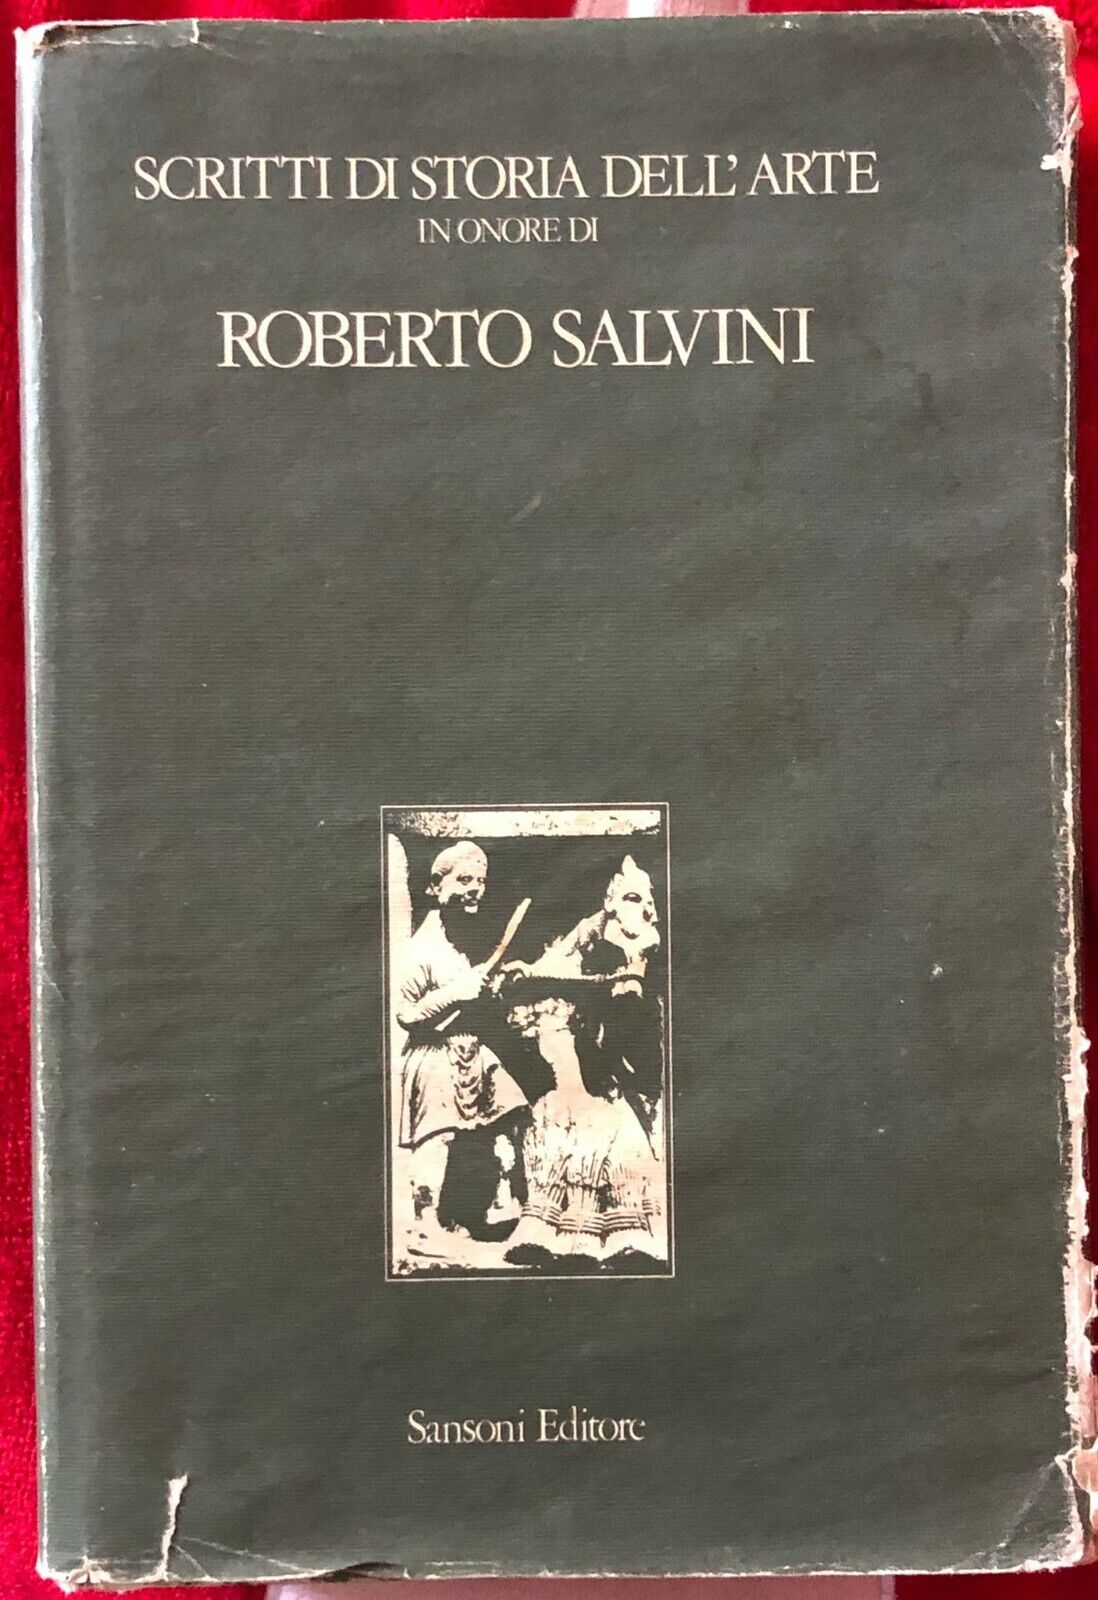 Scritti di Storia delL'Arte in onore di Roberto Salvini di Aa.vv.,  1984,  Sanso